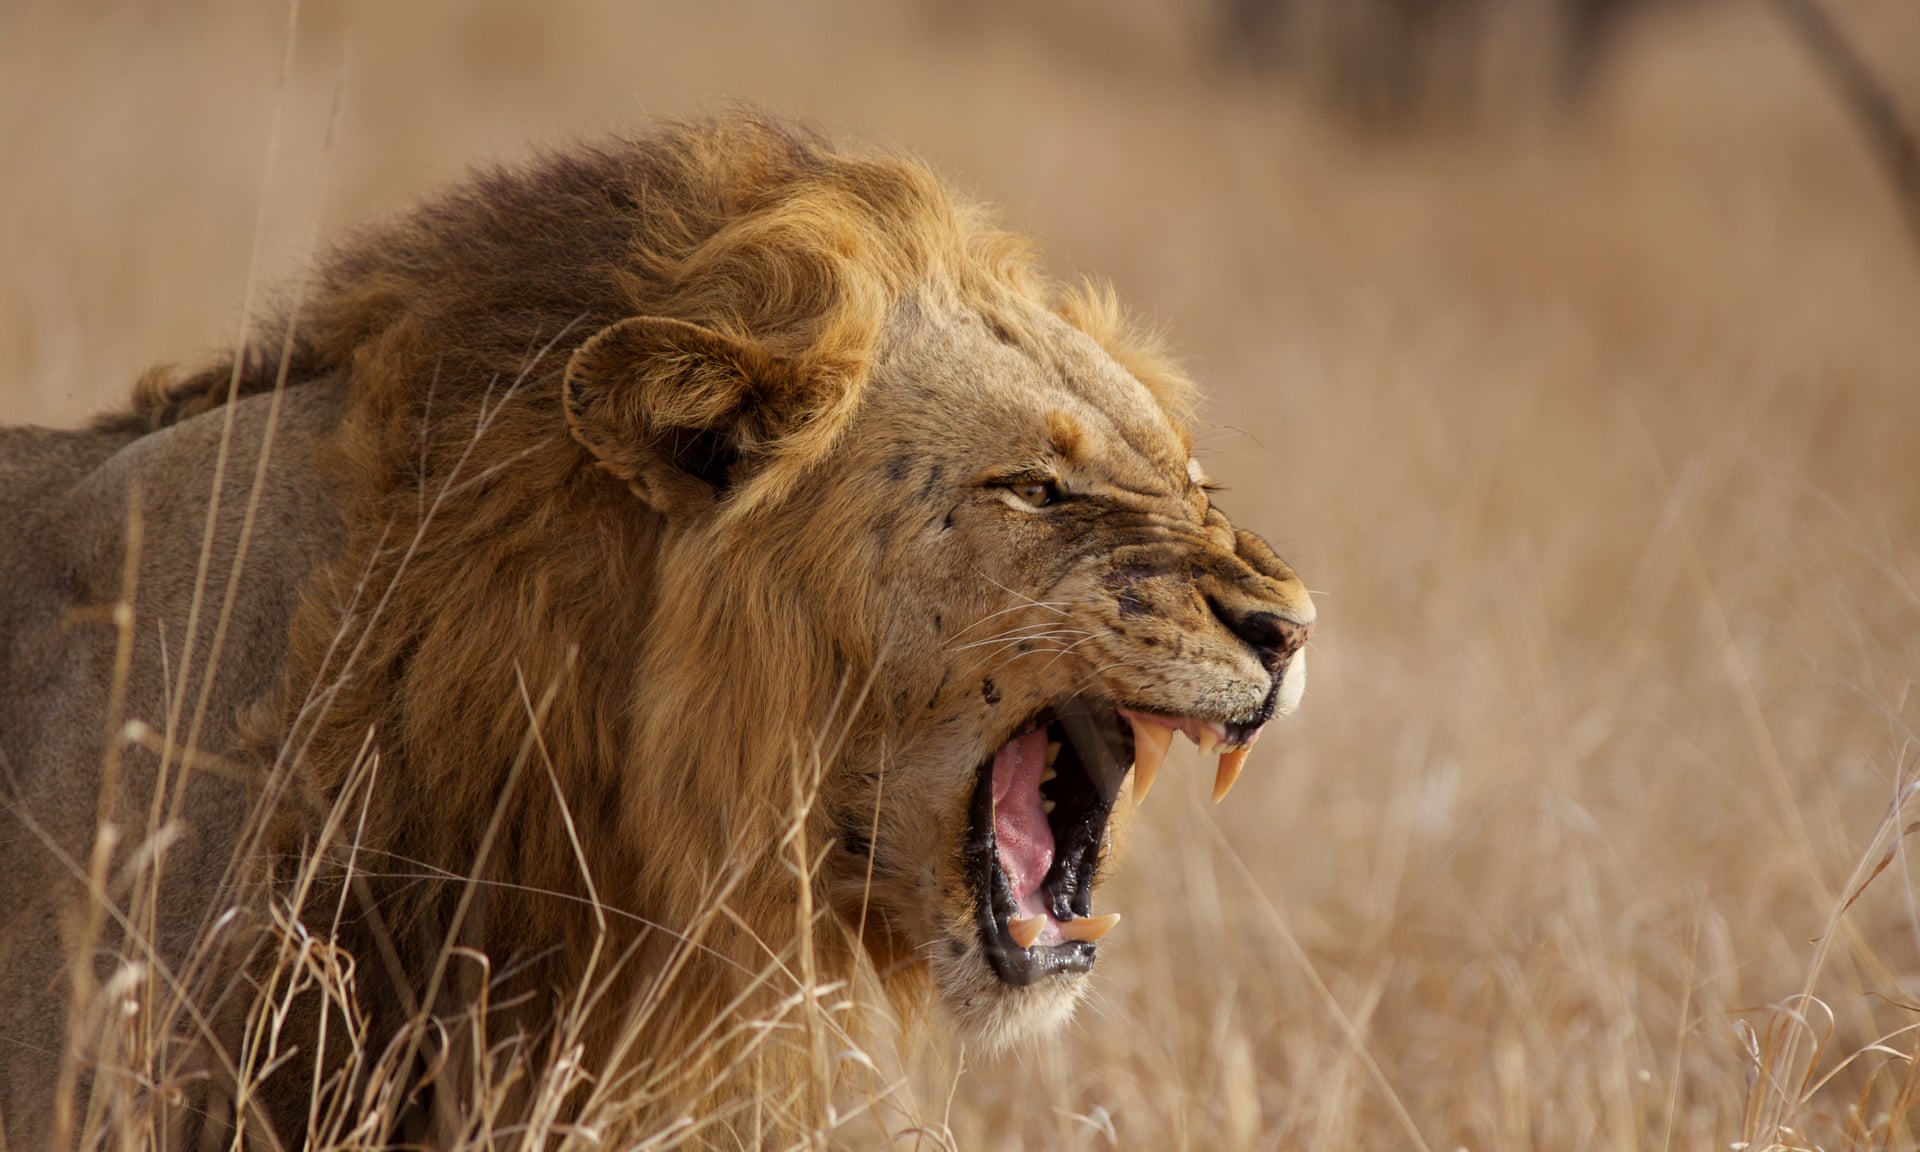 万兽之王狮子的生存危机:dna防御能力减弱,遗传多样性